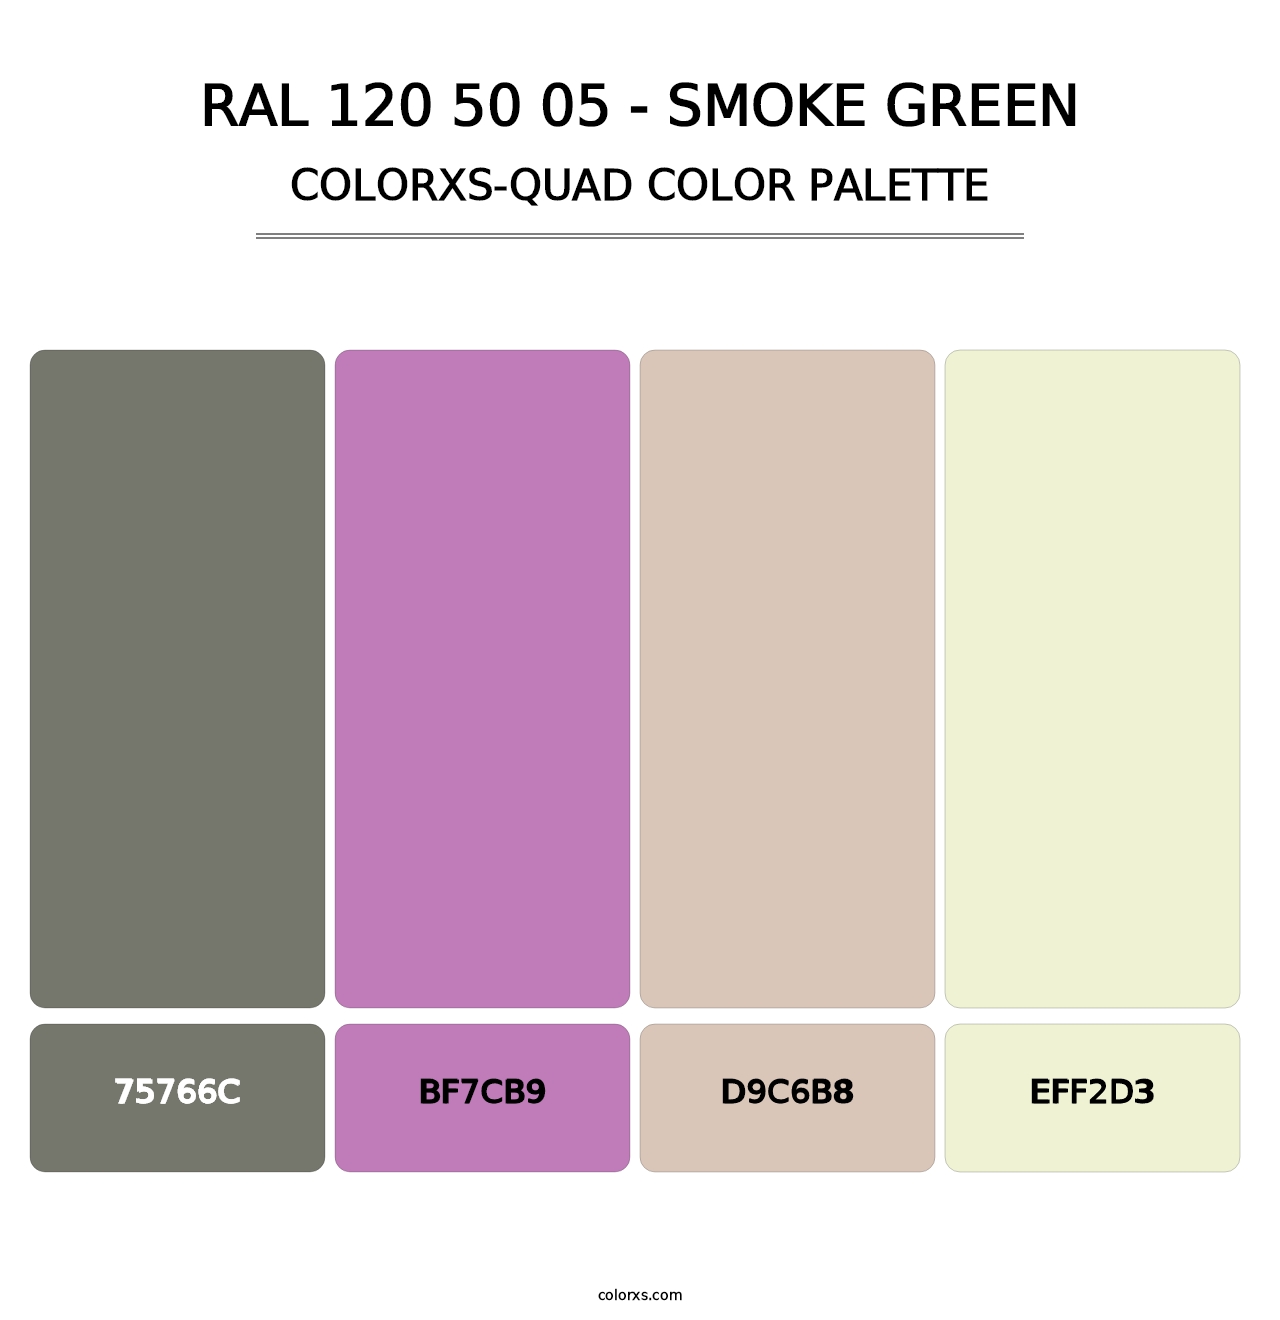 RAL 120 50 05 - Smoke Green - Colorxs Quad Palette